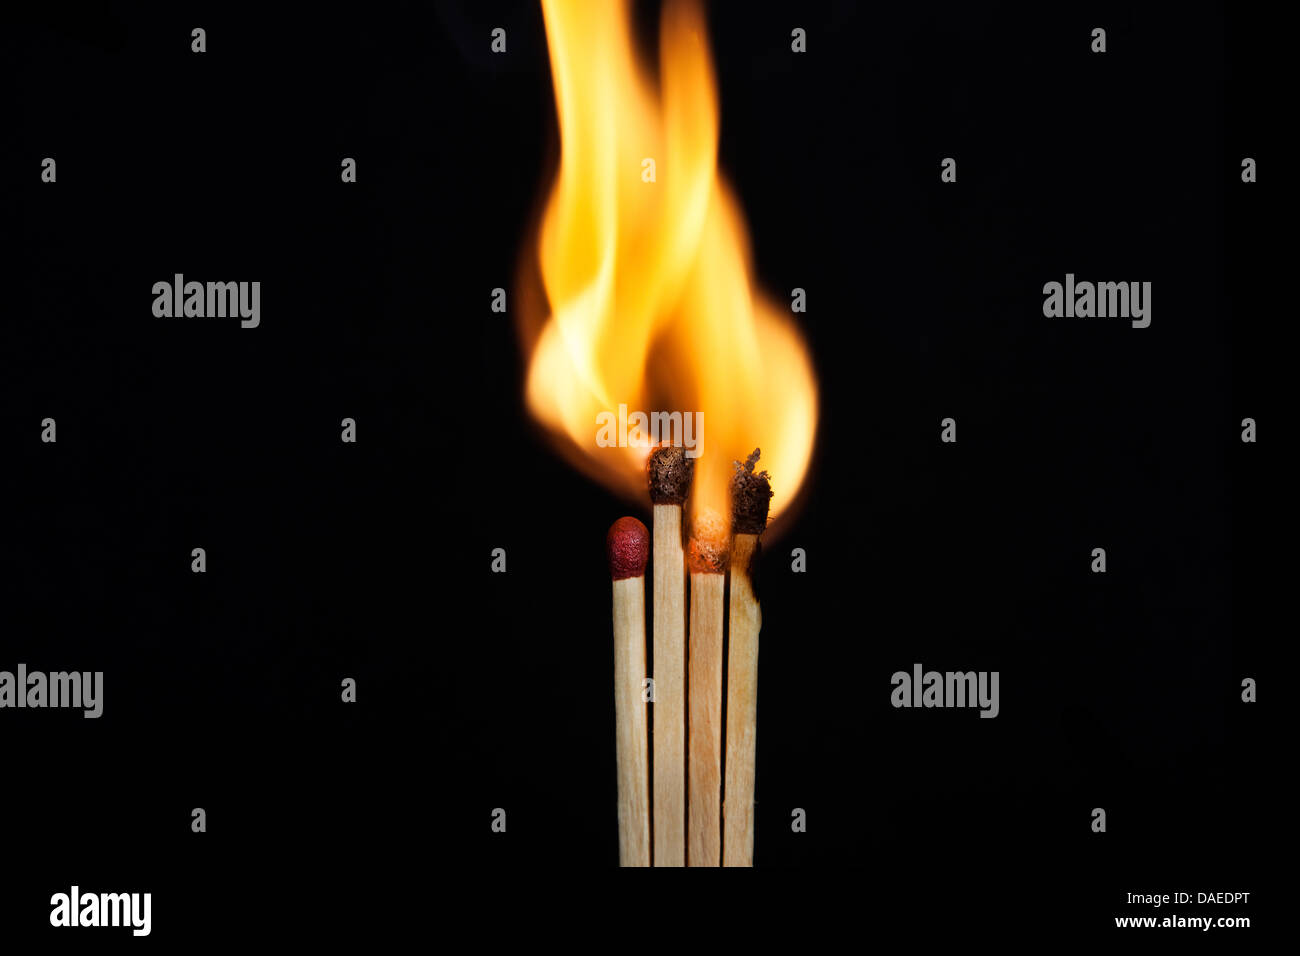 entsprechen Sie Flamme Matchstick schwarzes Feuer Hintergrund Blaze Closeup Stick leicht brennenden isoliert niemand Schwefel macht gelbe Temperatur f Stockfoto